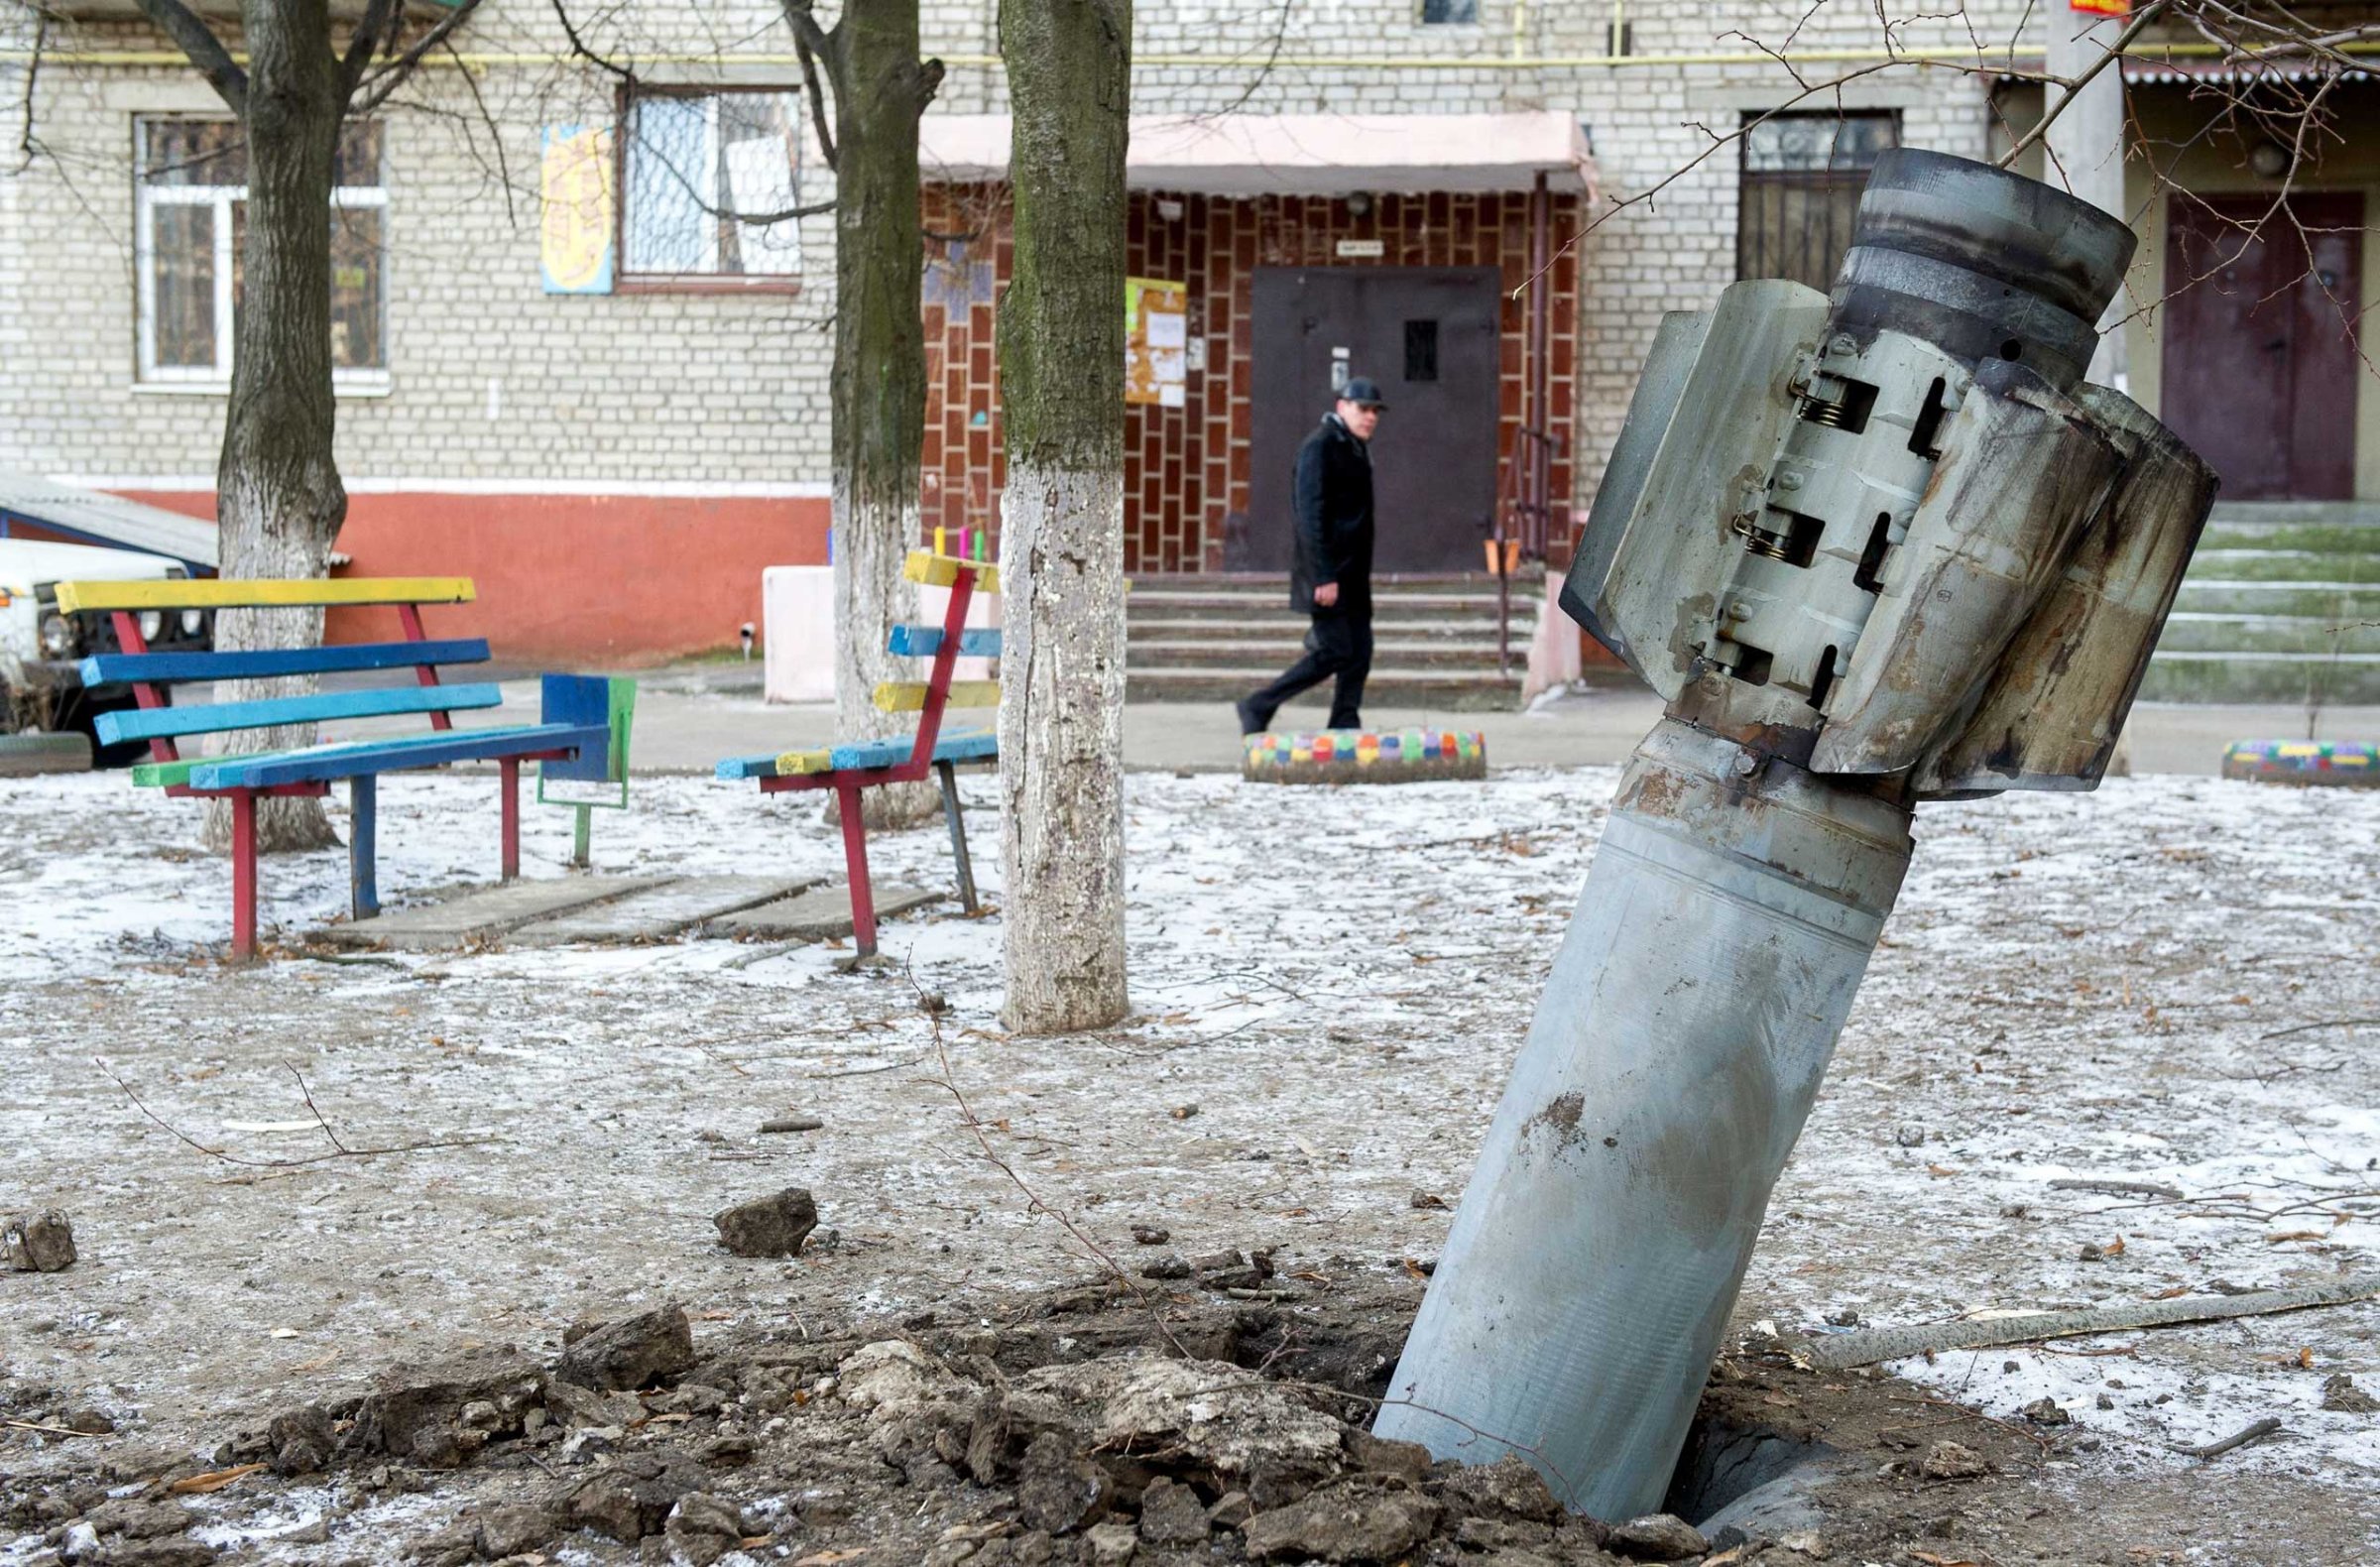 A man walks past an unexploded rocket in Kramatorsk, eastern Ukraine on Feb. 11, 2015.